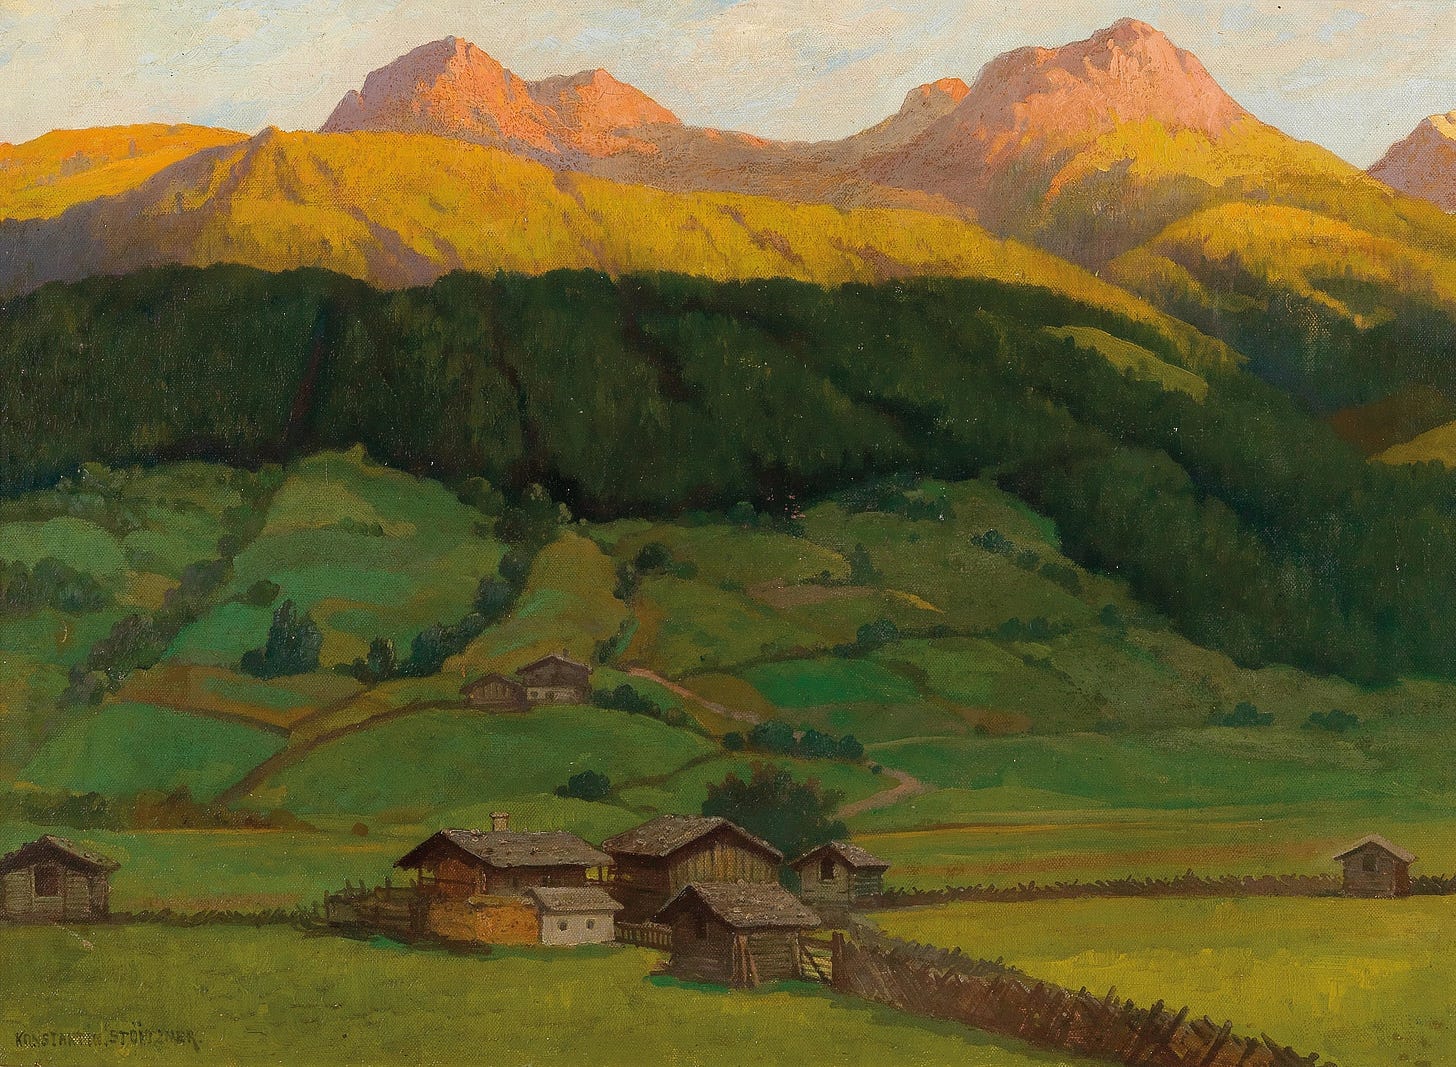 Einbruch der Dämmerung, Oberpinzgau by Konstantin Stoitzner (Austrian, 1863-1934)